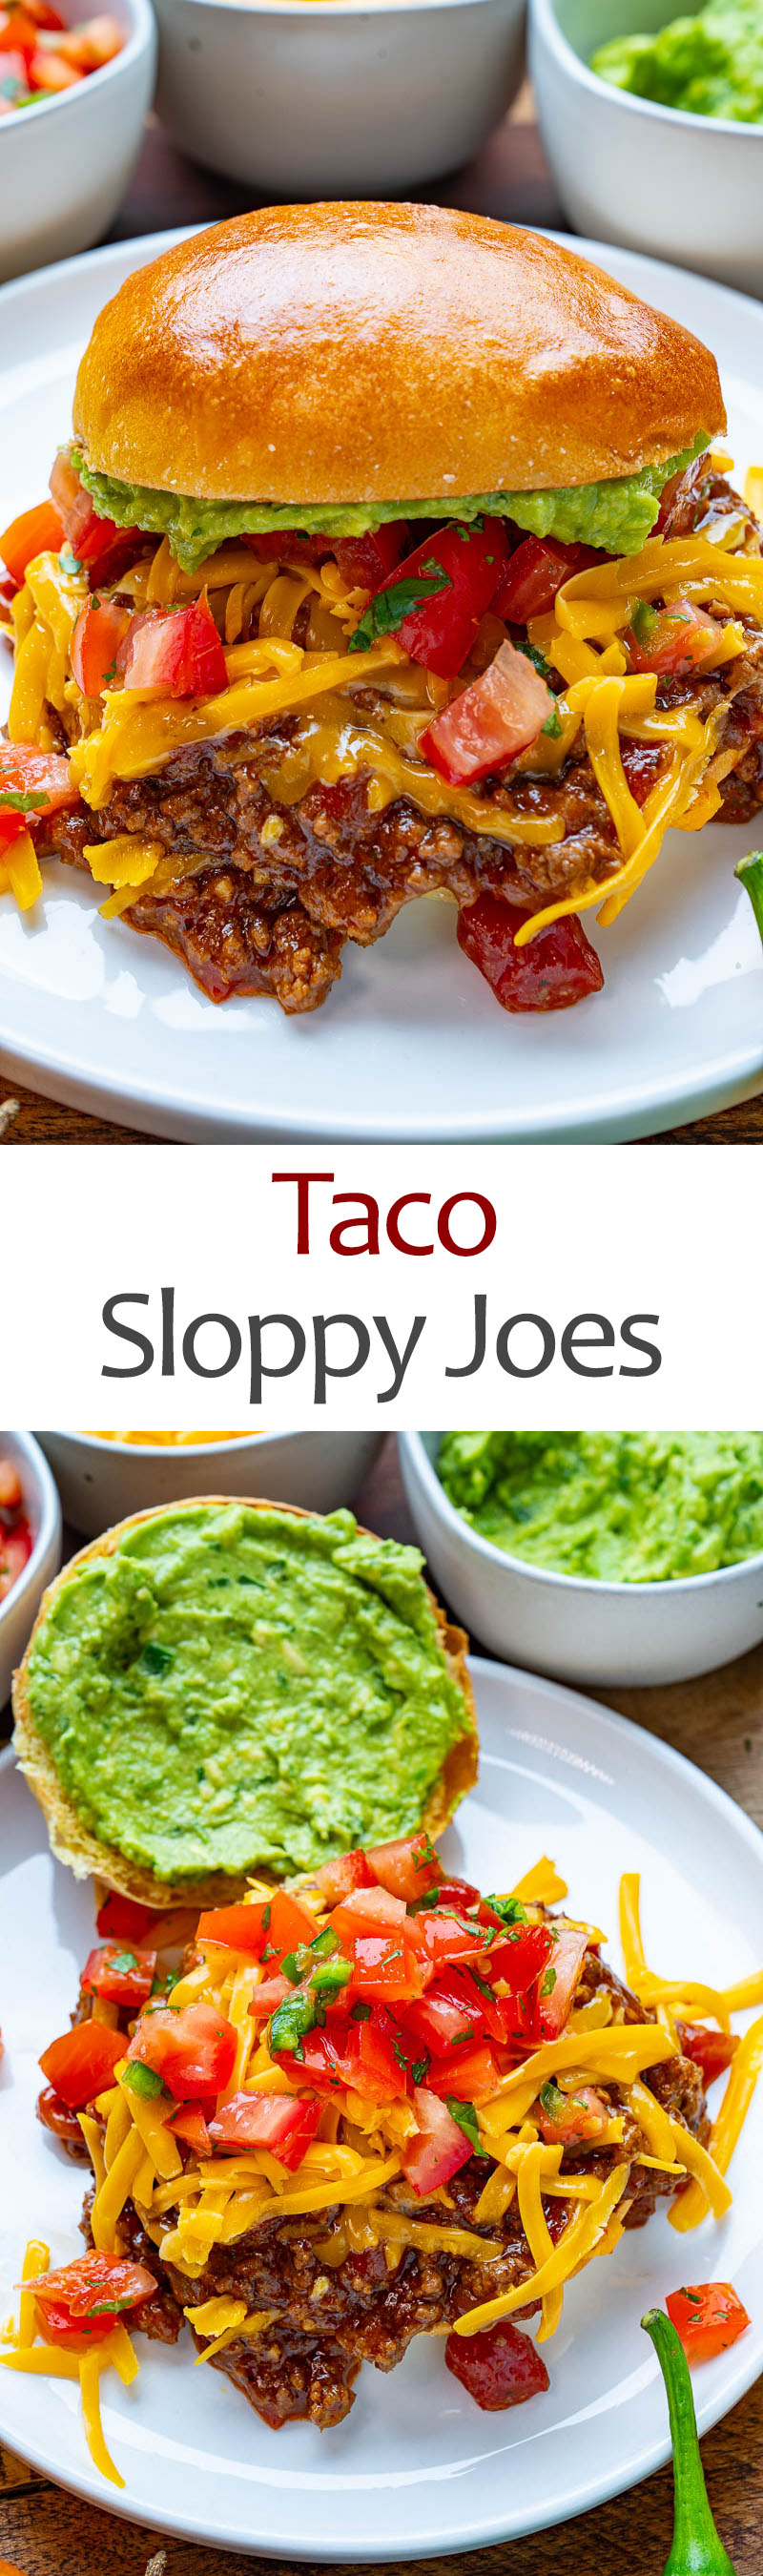 Taco Sloppy Joes